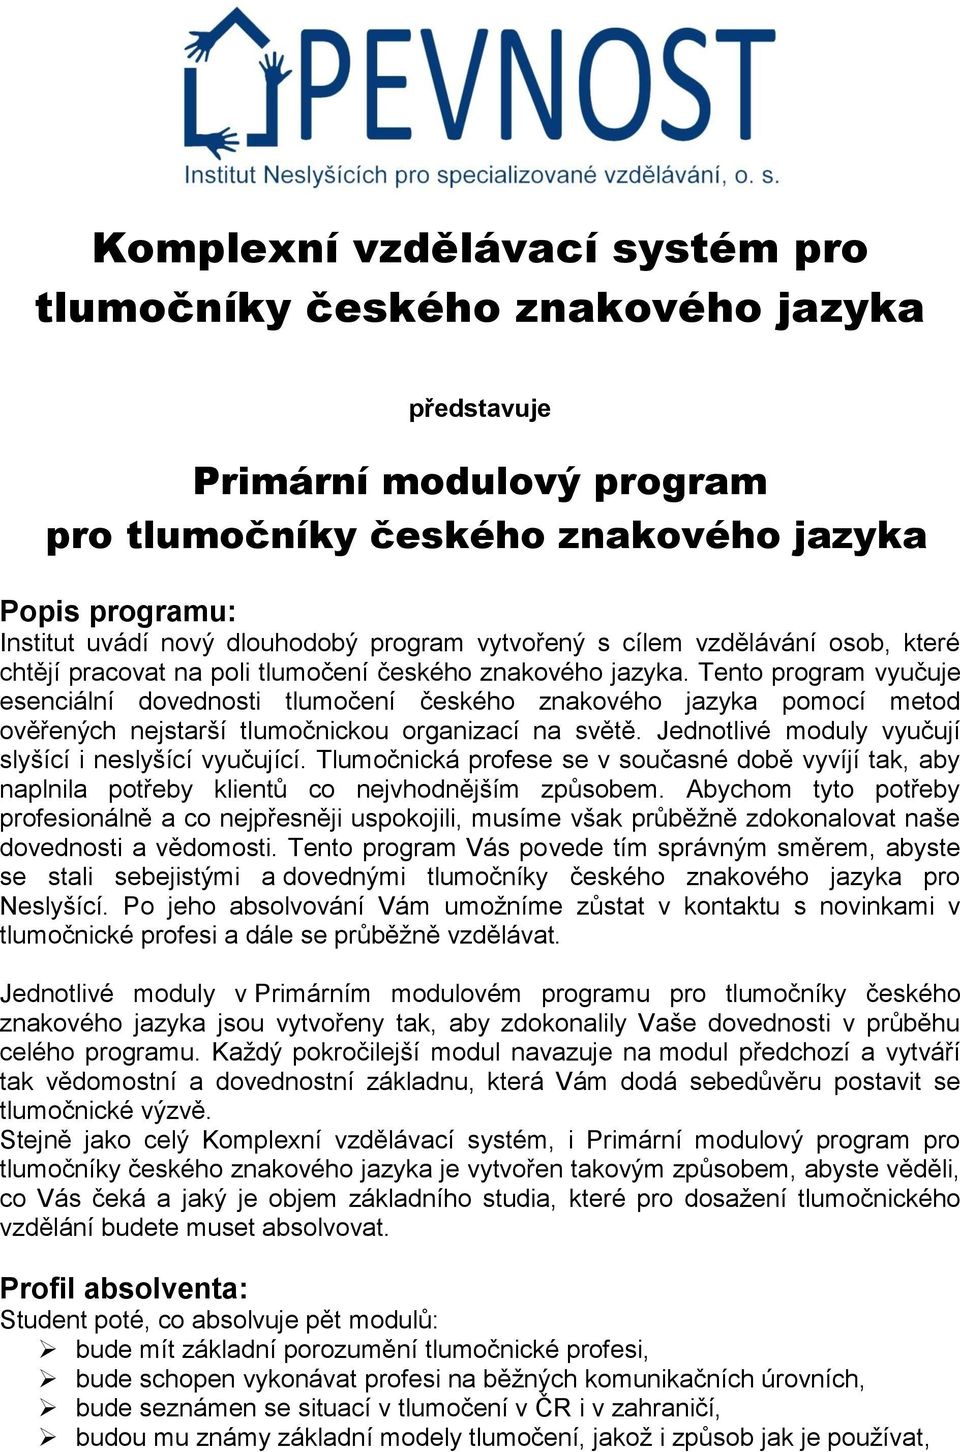 Tento program vyučuje esenciální dovednosti tlumočení českého znakového jazyka pomocí metod ověřených nejstarší tlumočnickou organizací na světě.